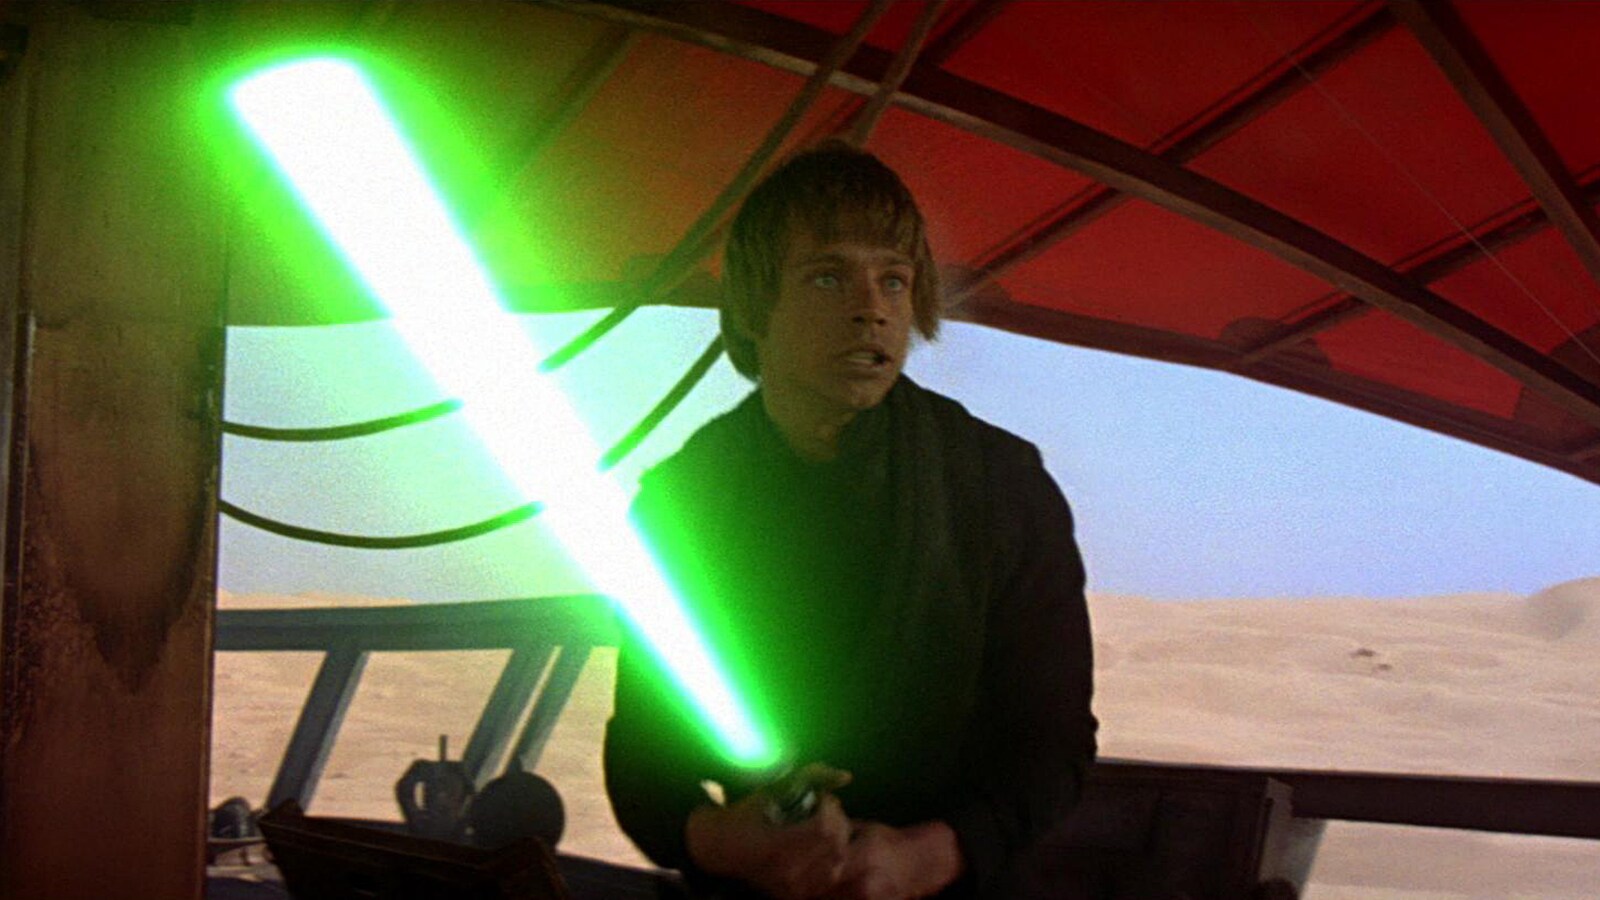 Meet you on Tatooine! Celebrate 40 years of Star Wars: Return of